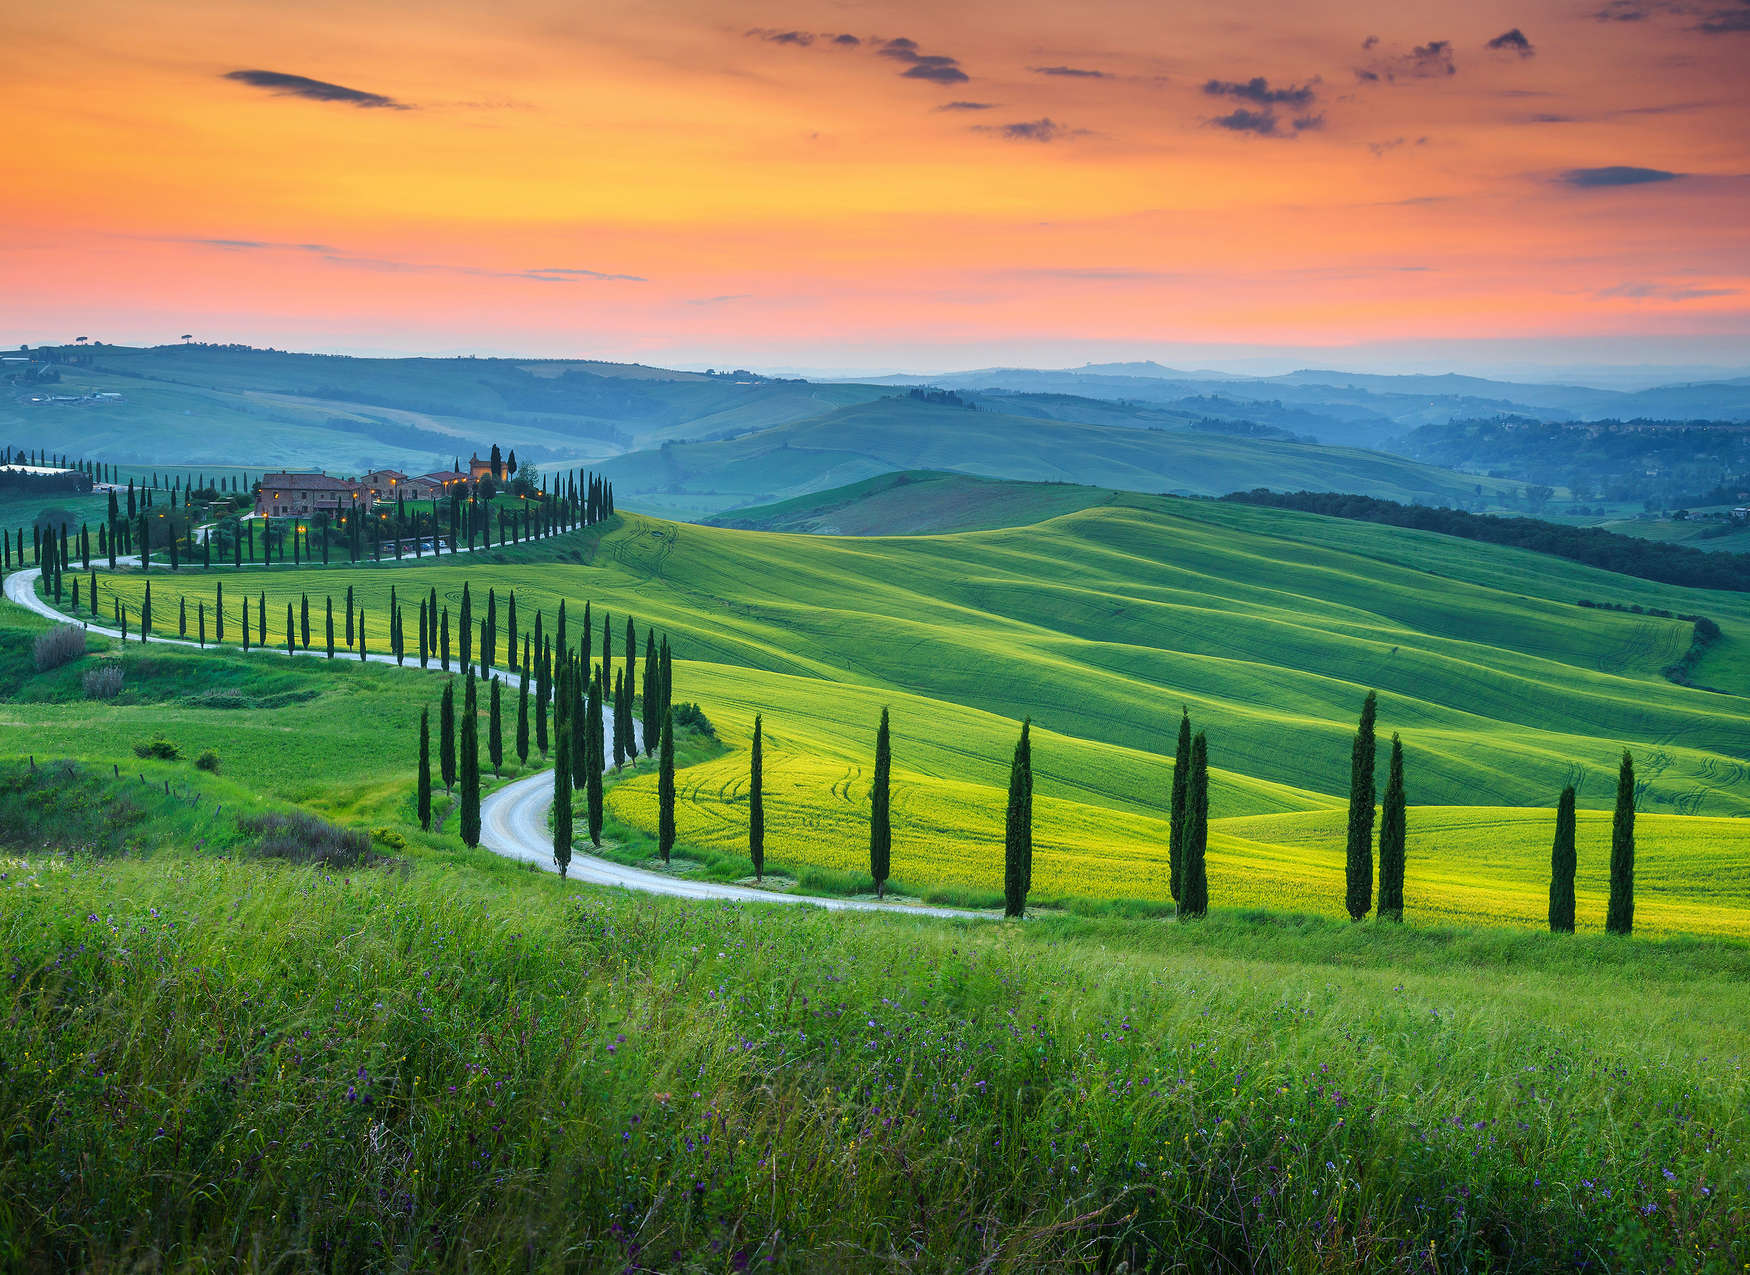             Tuscany sunrise mural - green, orange, yellow
        